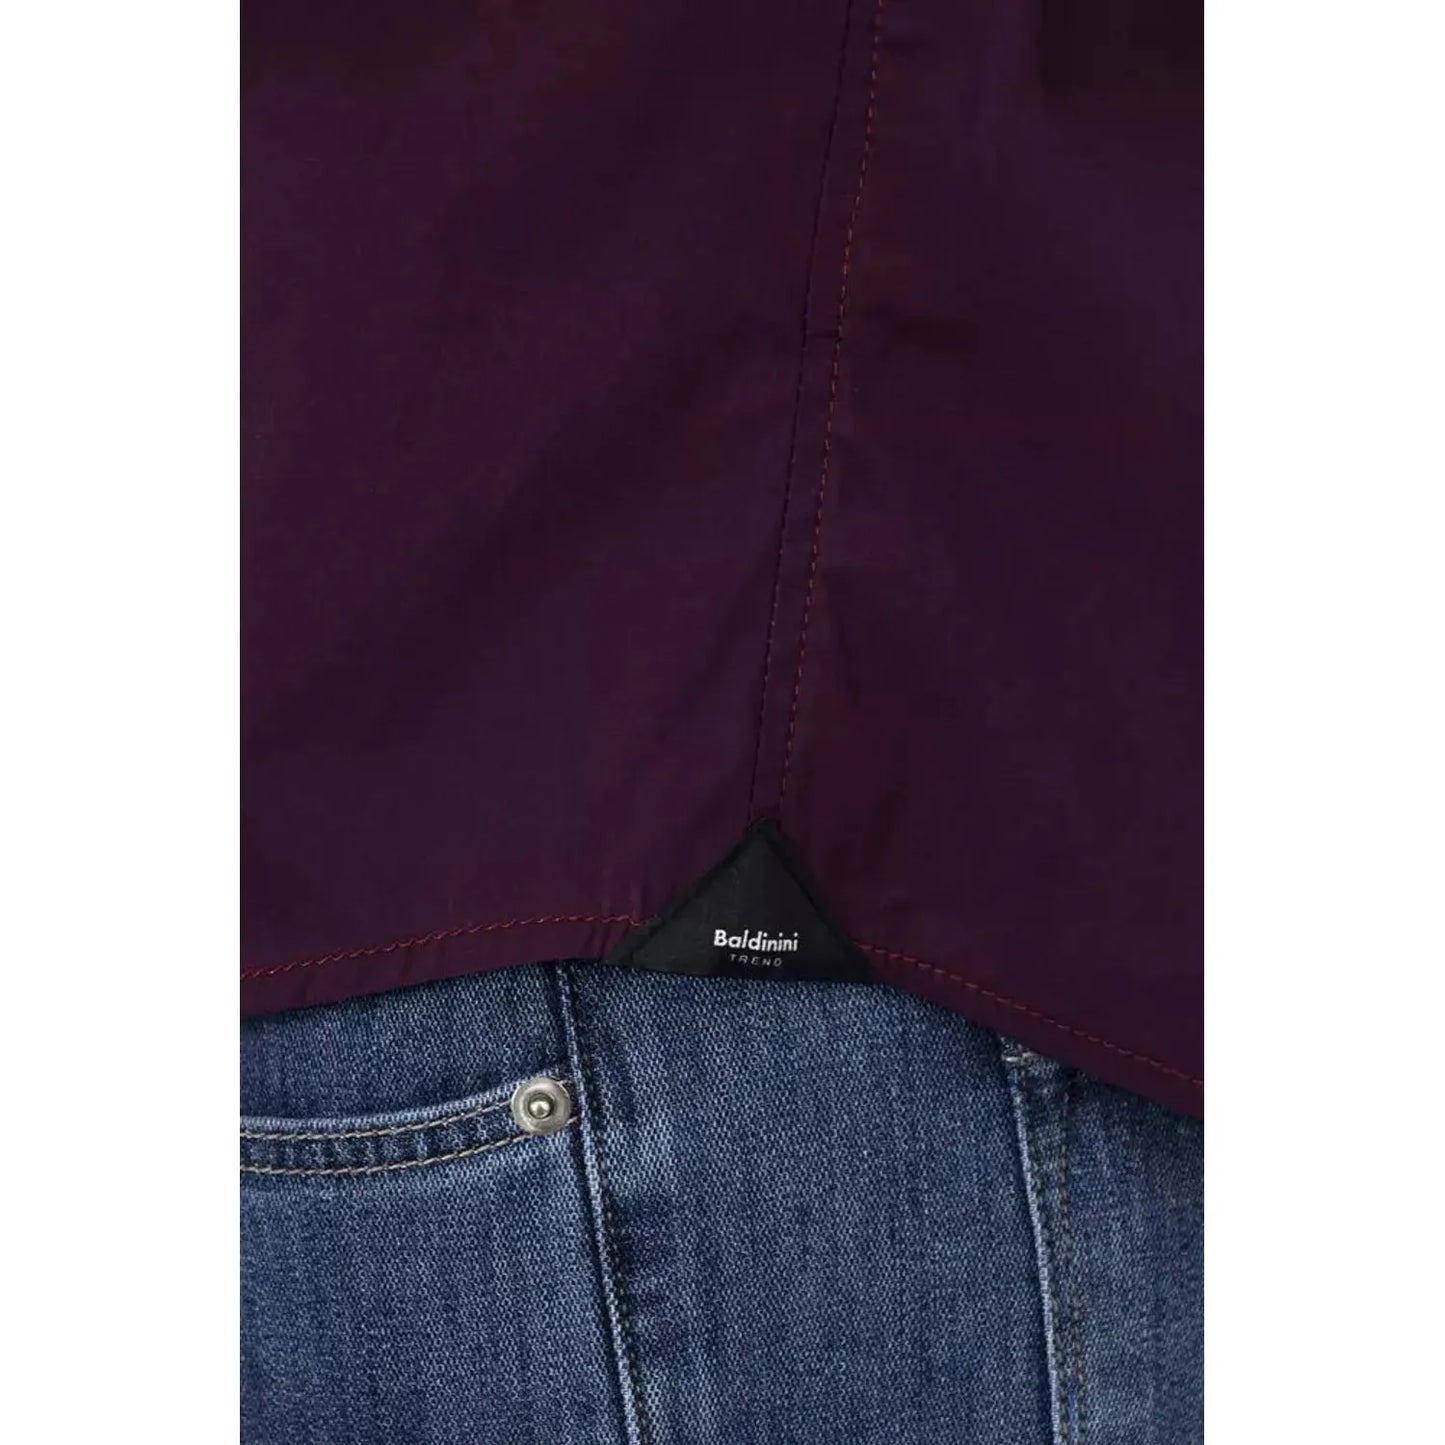 Baldinini Trend Chic Bordeaux Slim Fit Men's Shirt burgundy-cotton-shirt-5